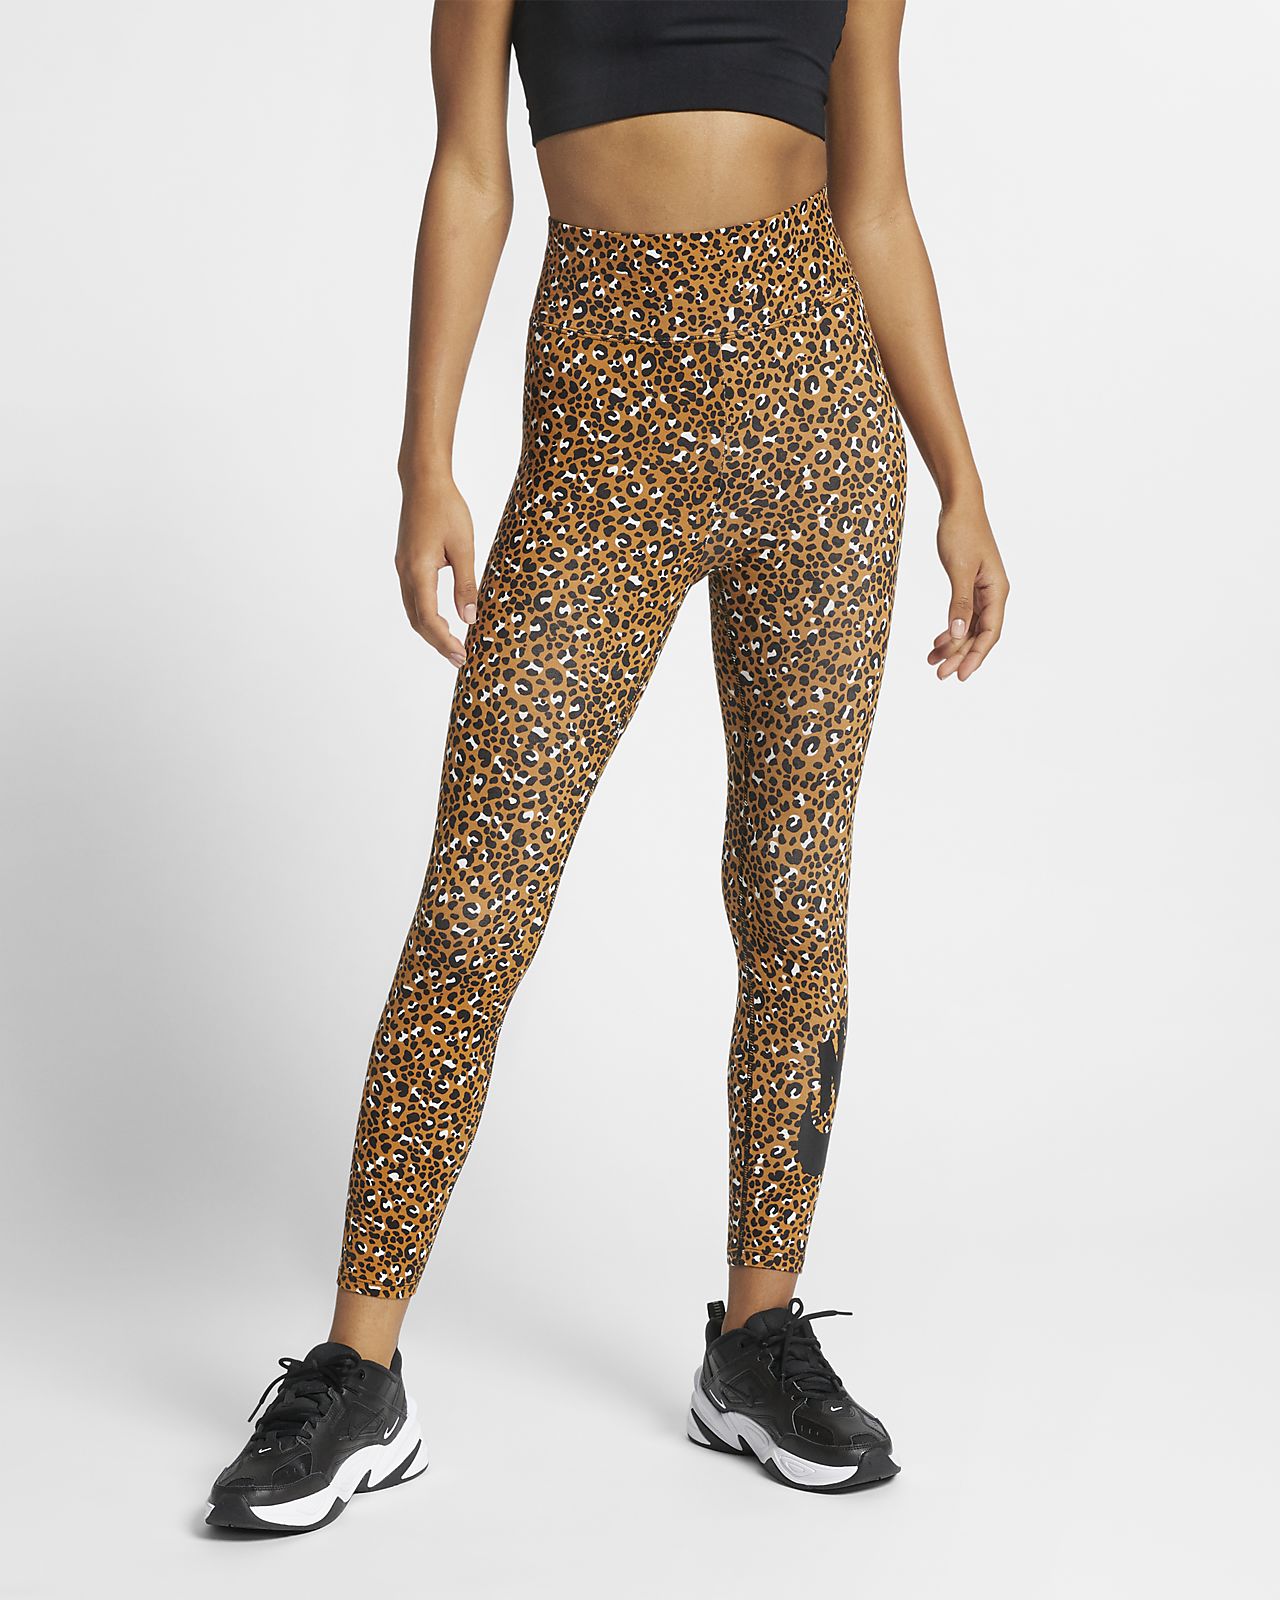 women's nike leopard leggings